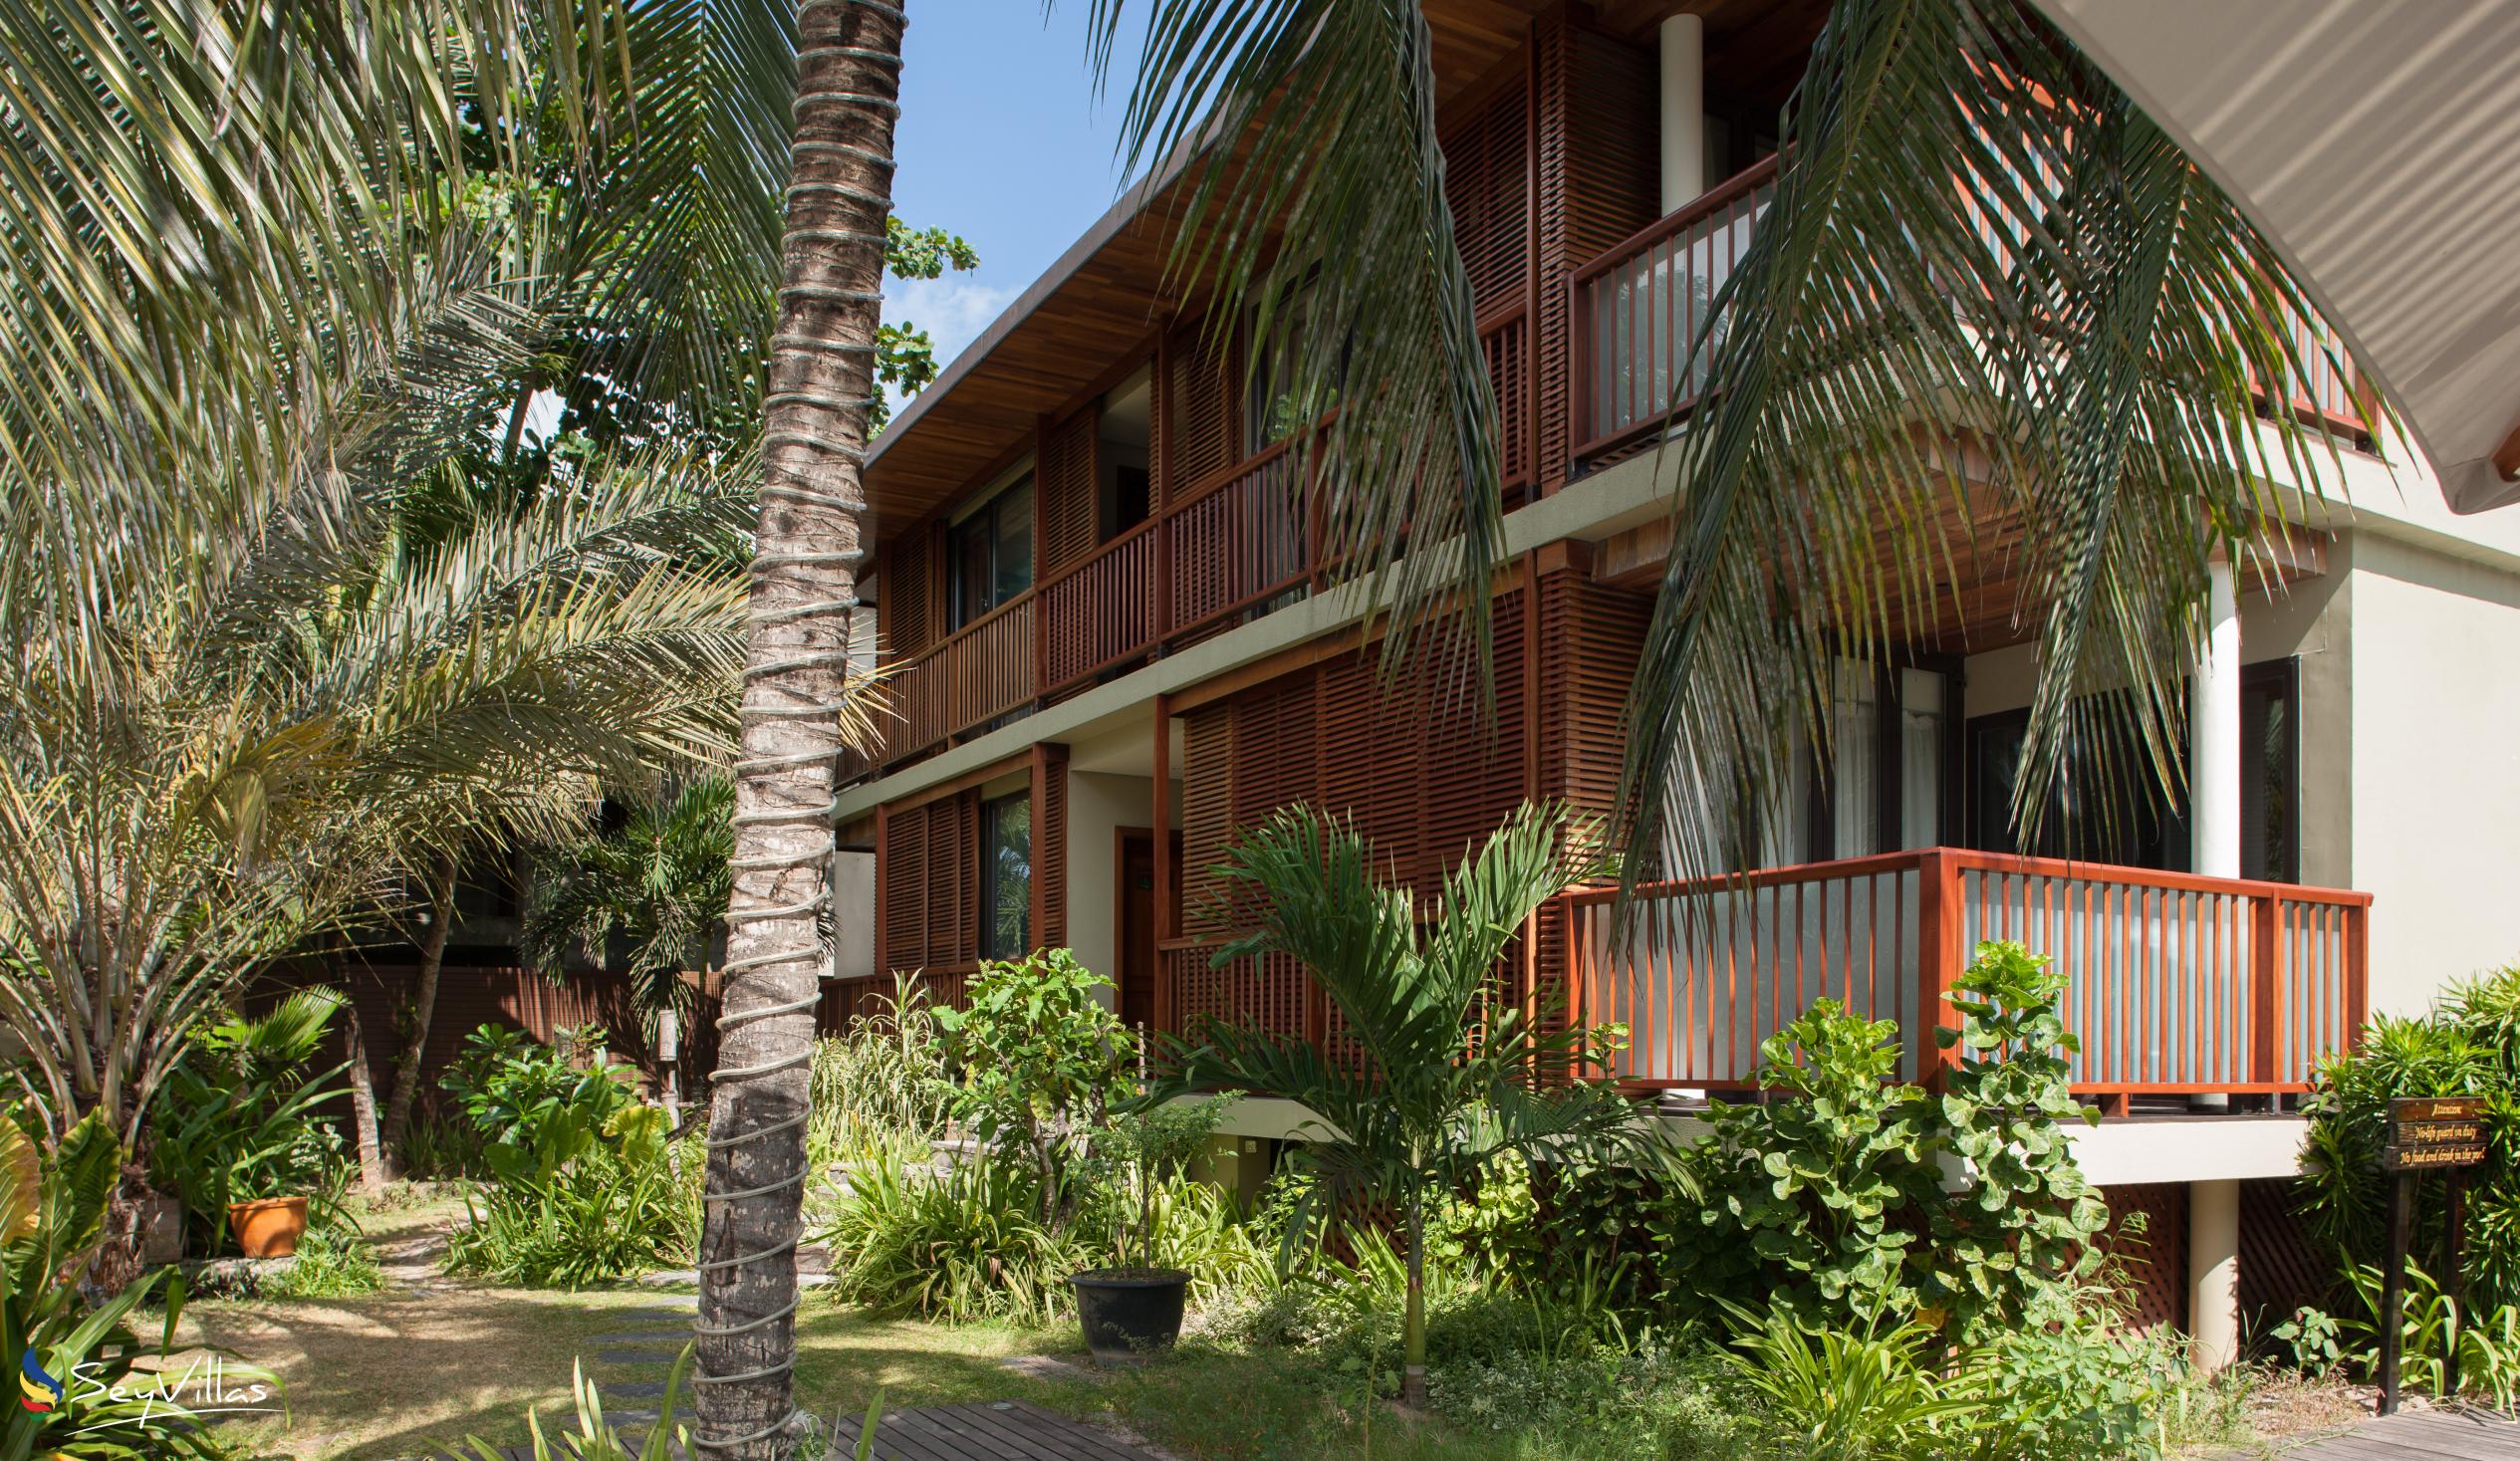 Foto 15: Dhevatara Beach Hotel - Aussenbereich - Praslin (Seychellen)